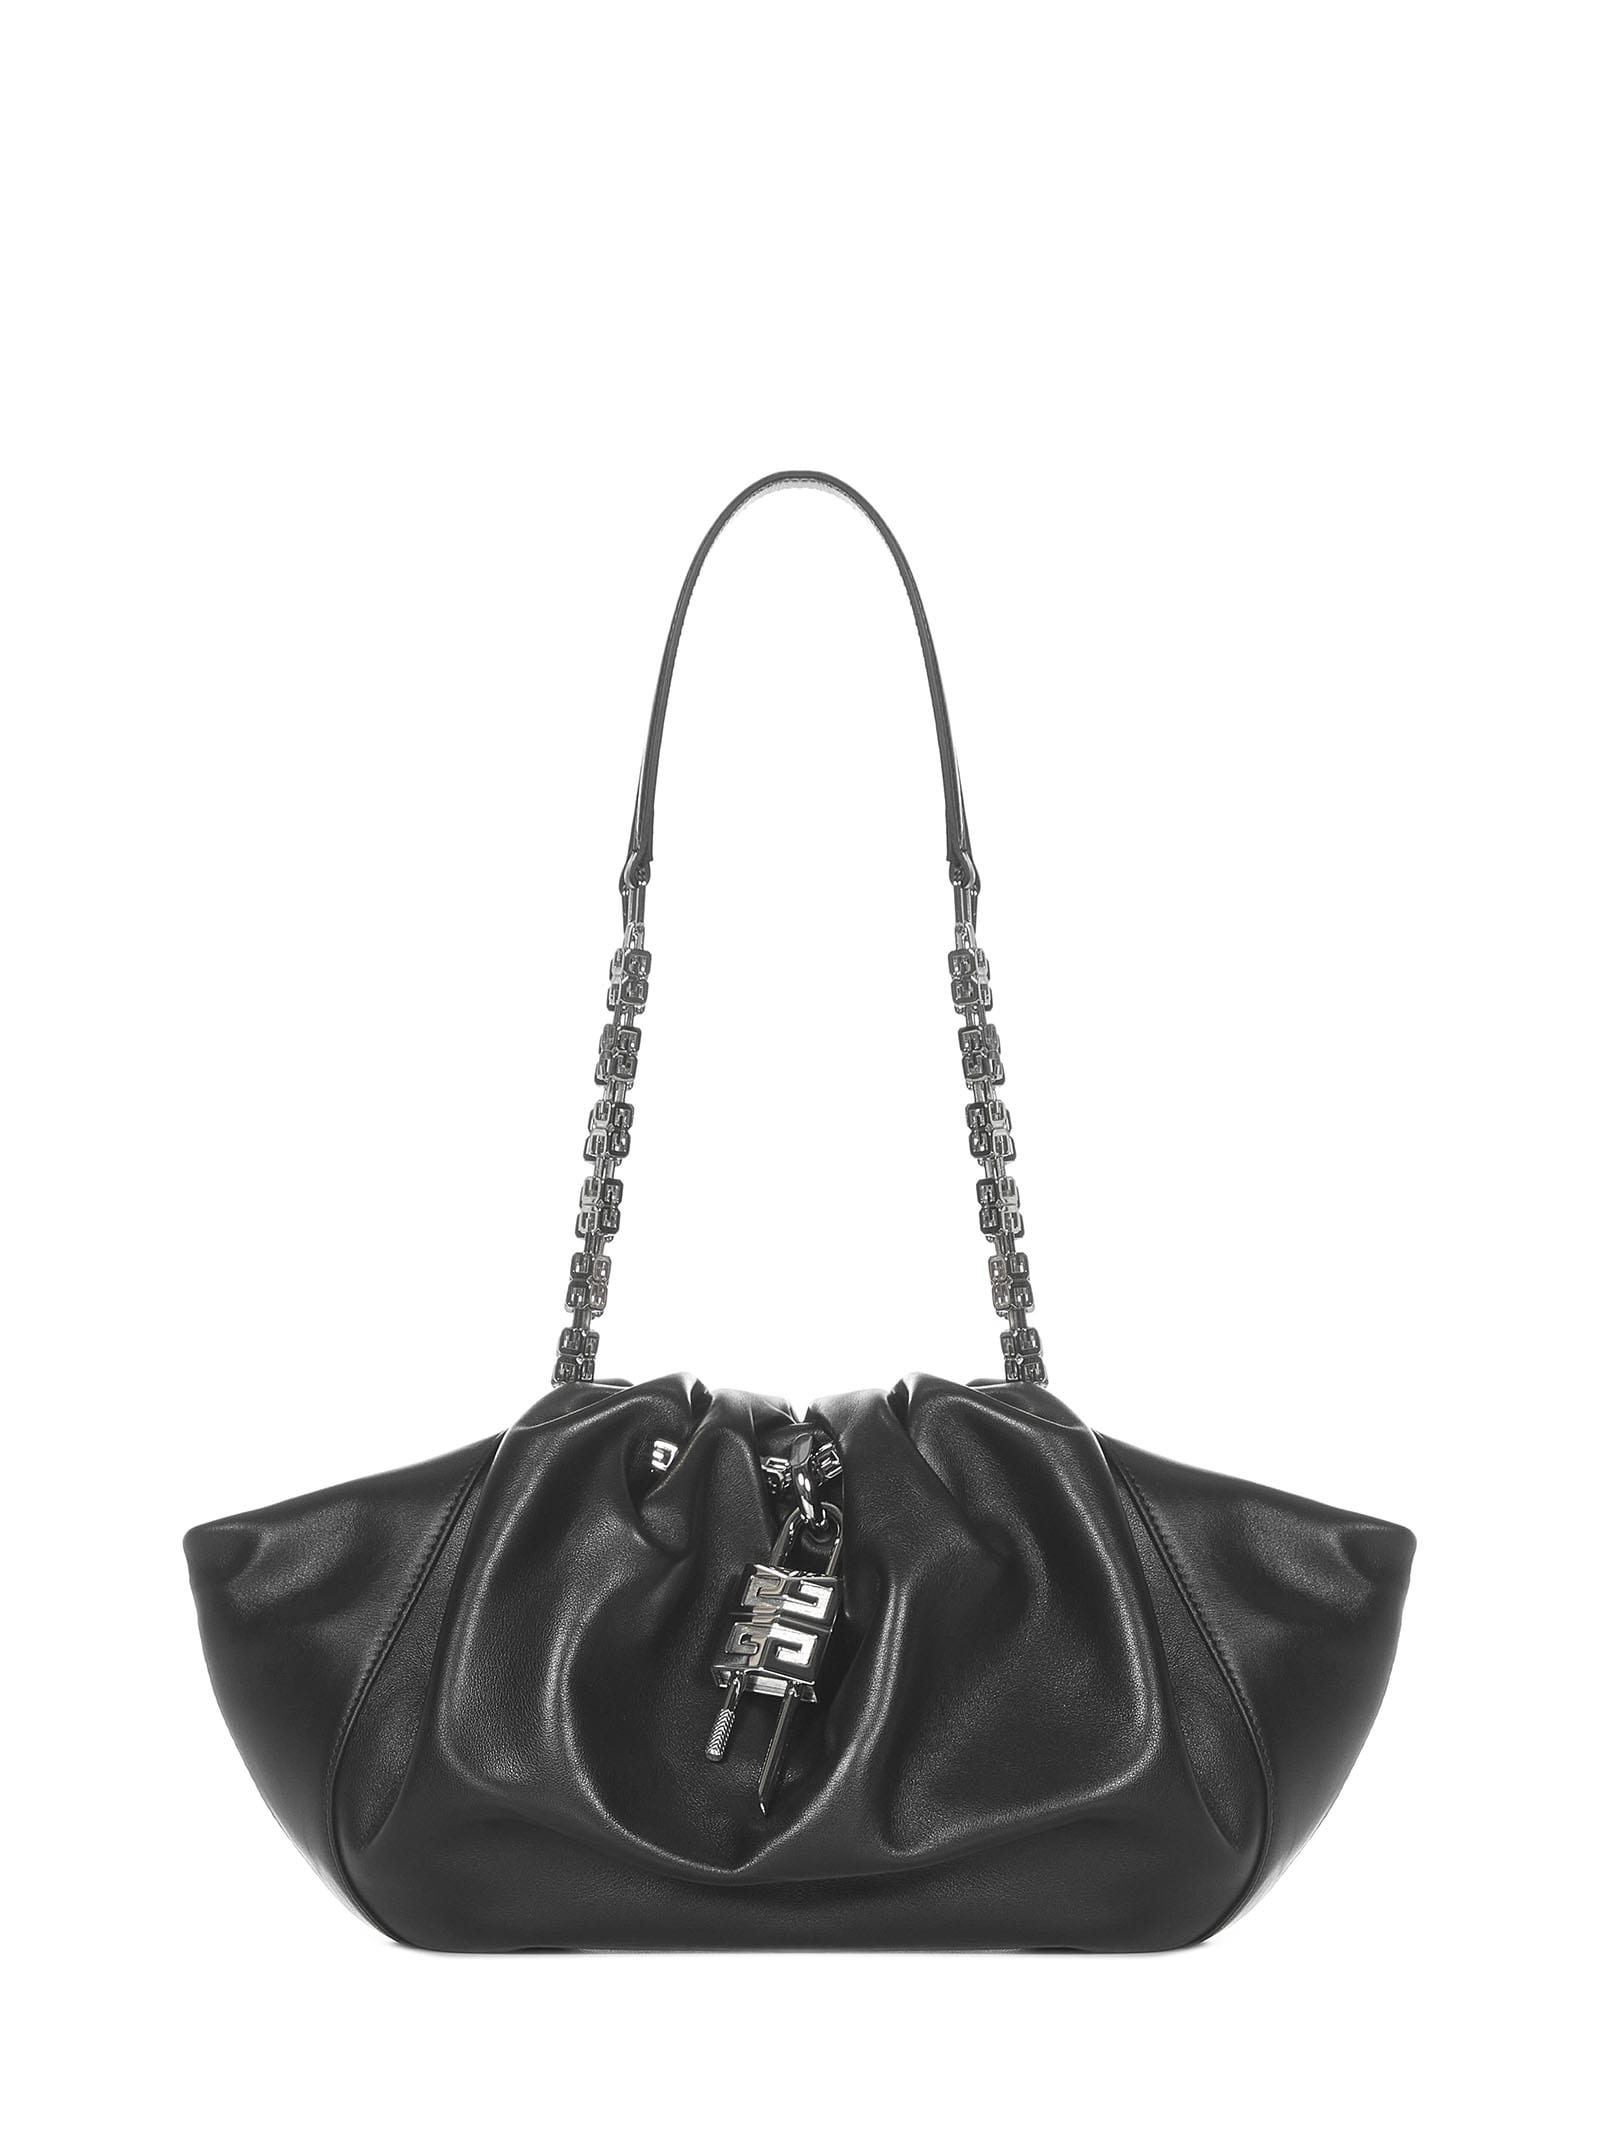 Givenchy Kenny Small Shoulder Bag